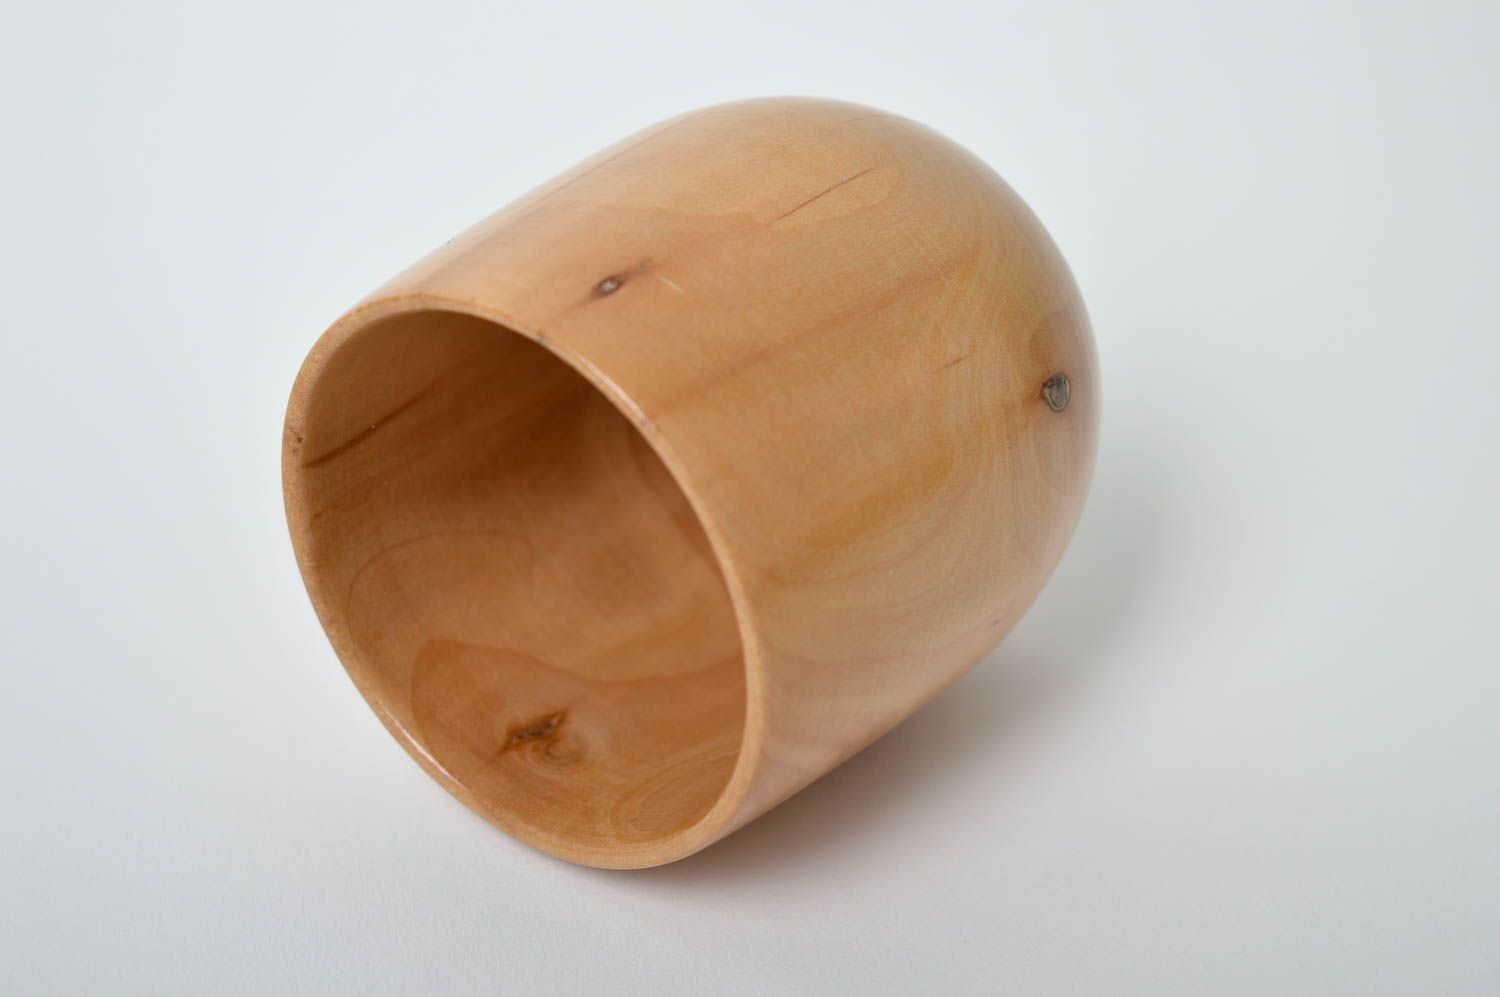 Vaso de madera artesanal utensilio de cocina menaje del hogar vajilla moderna foto 3